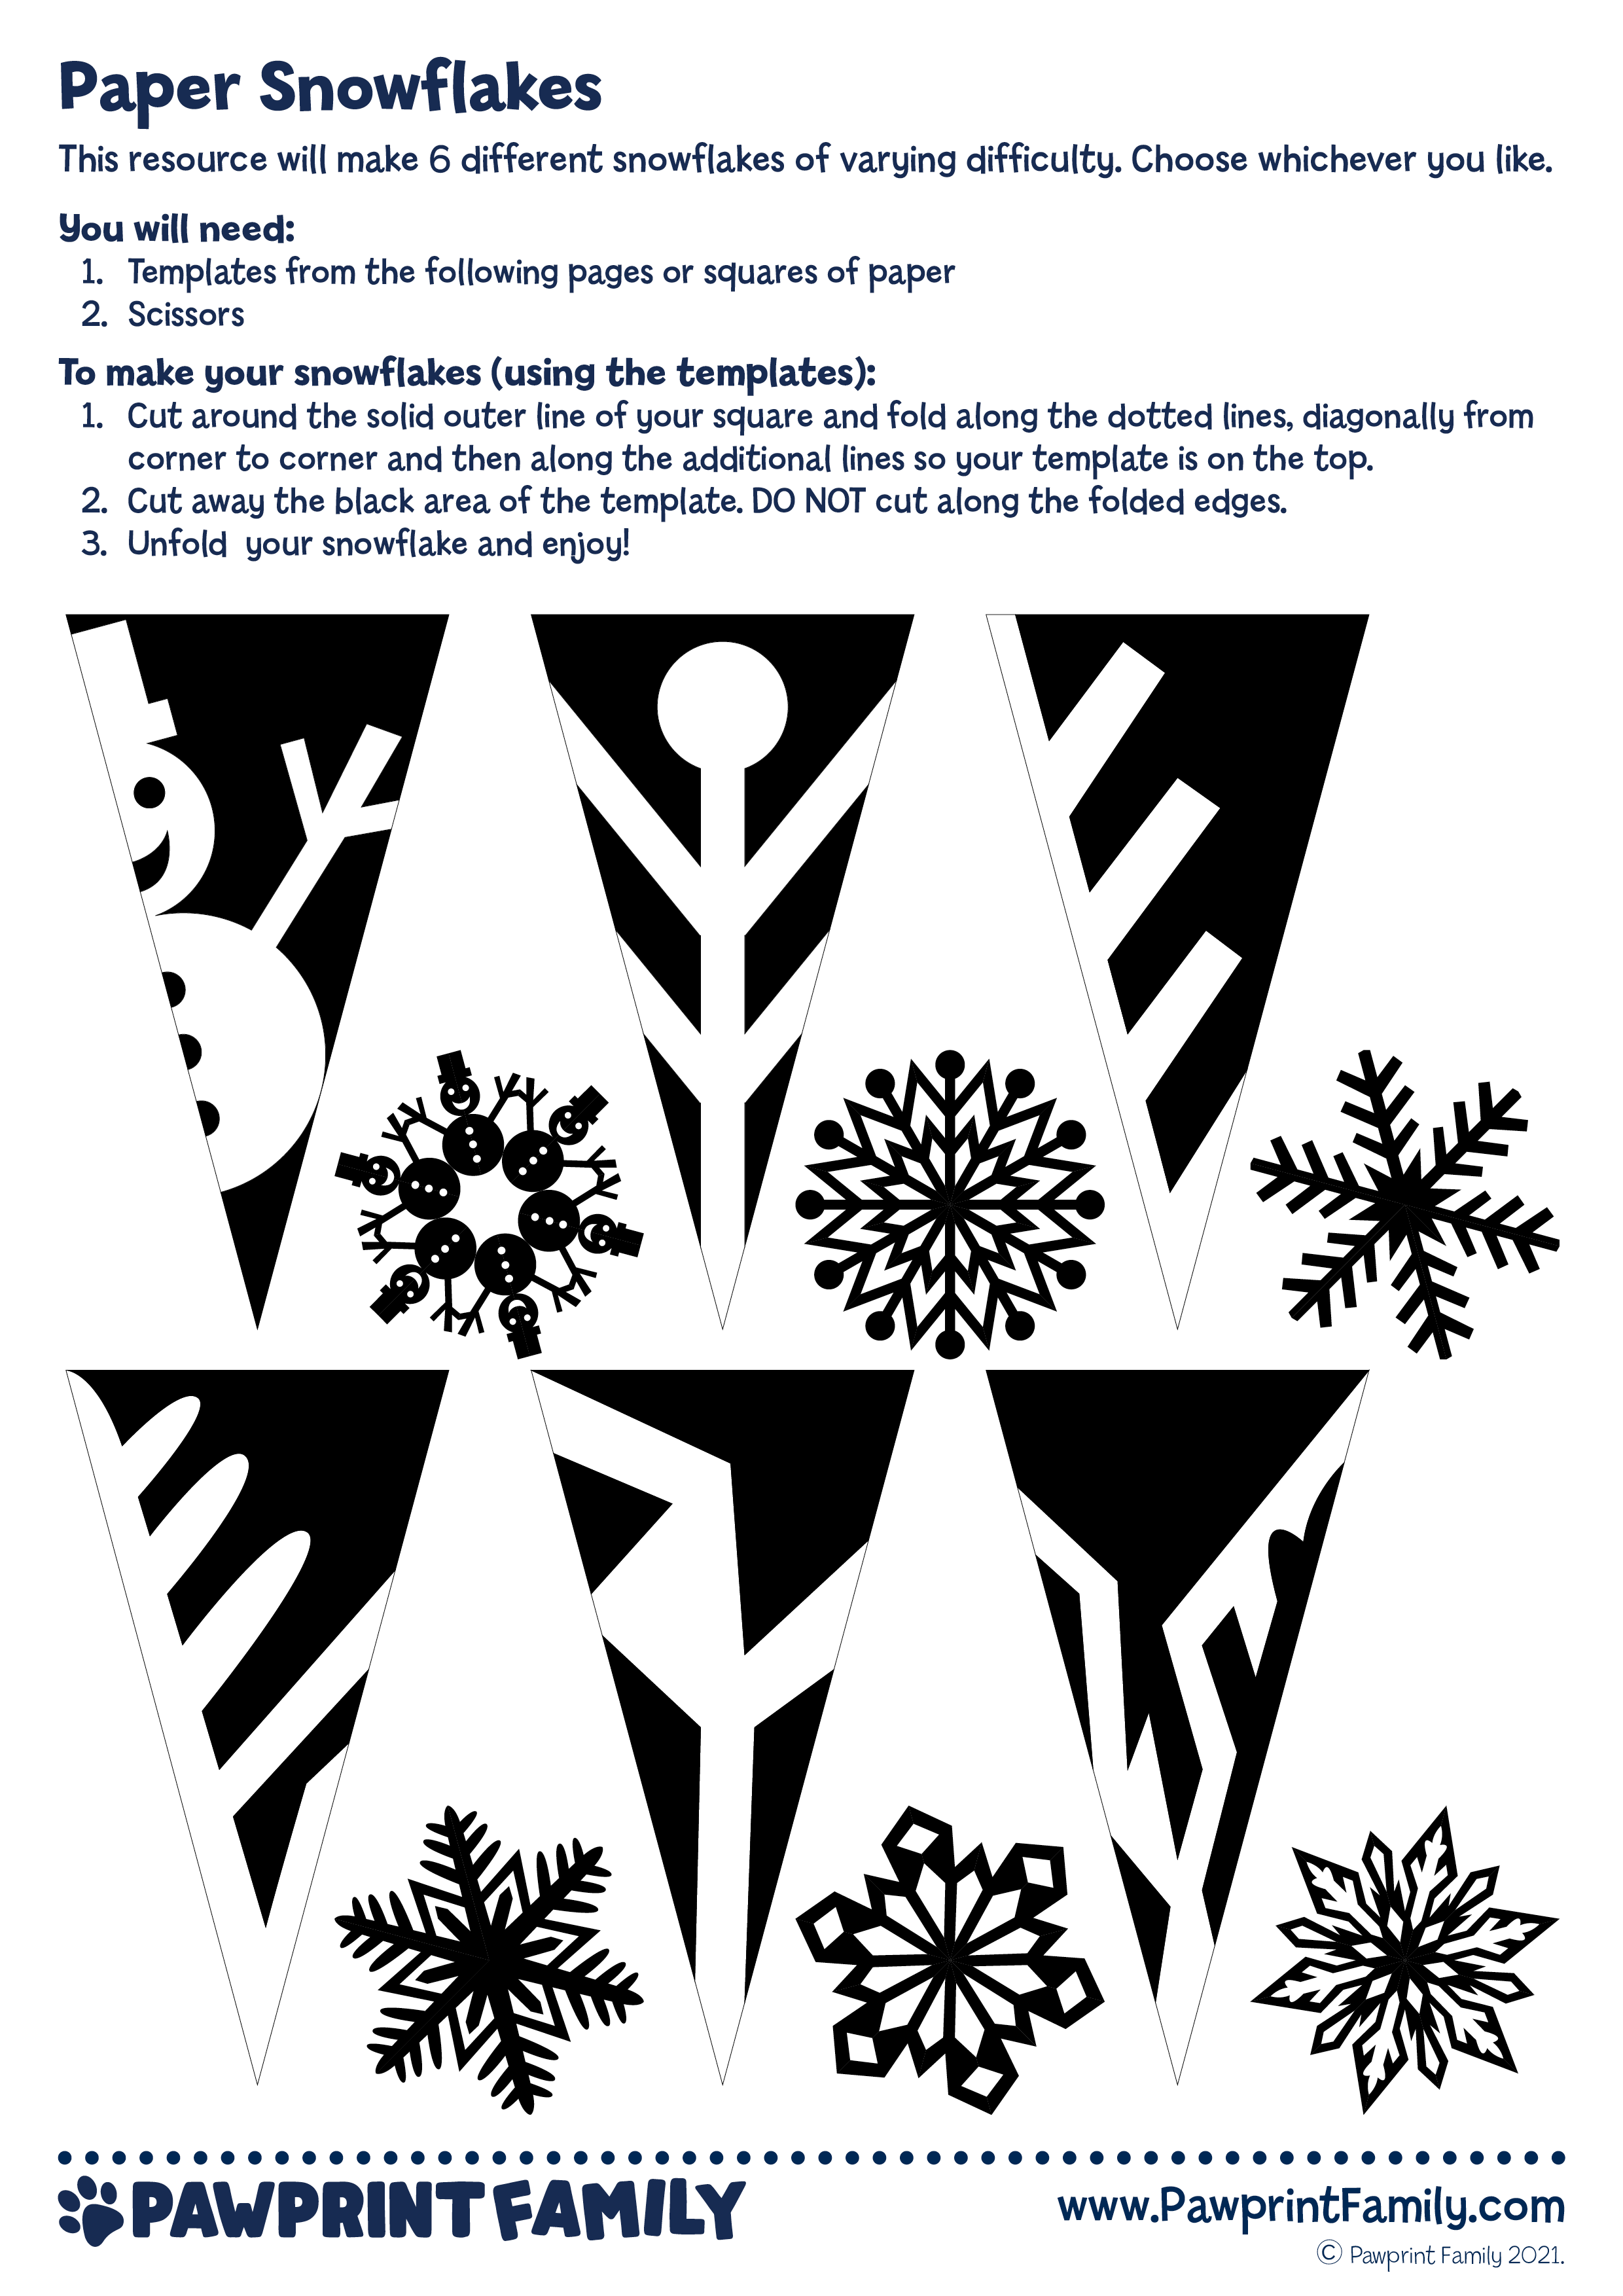 Paper Snowflakes - Pawprint Family